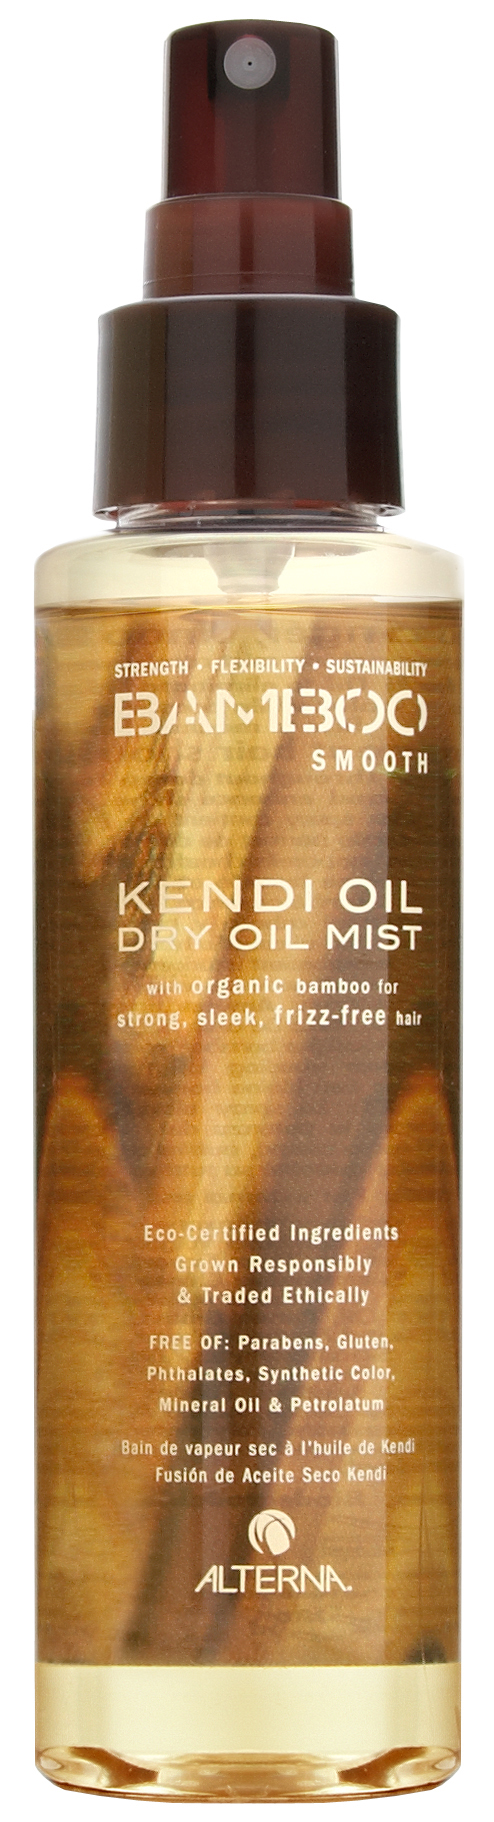 BAMBOO Smooth Dry Oil Mist är en av mina hårvänner.